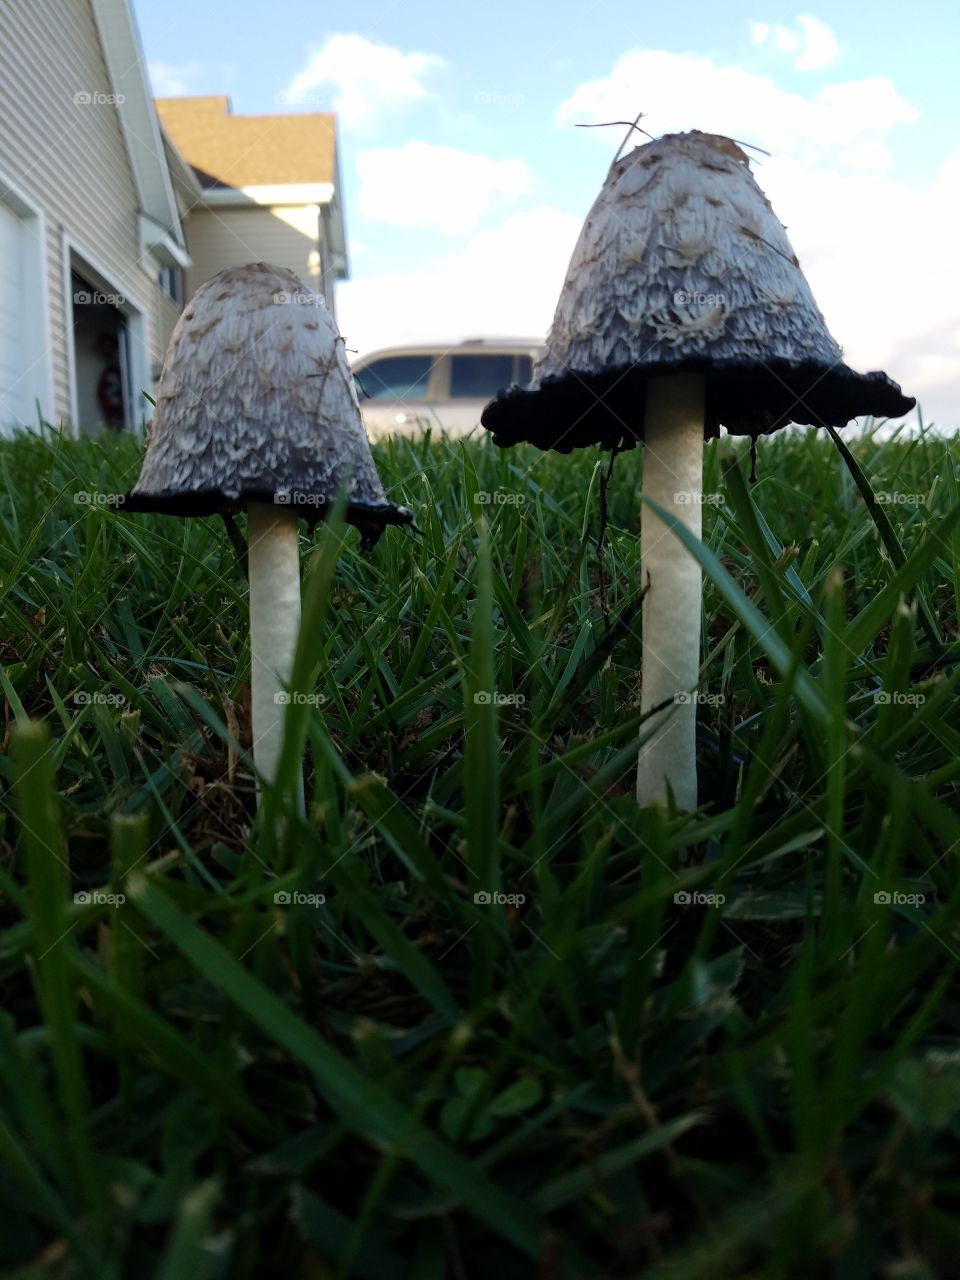 Tall mushrooms